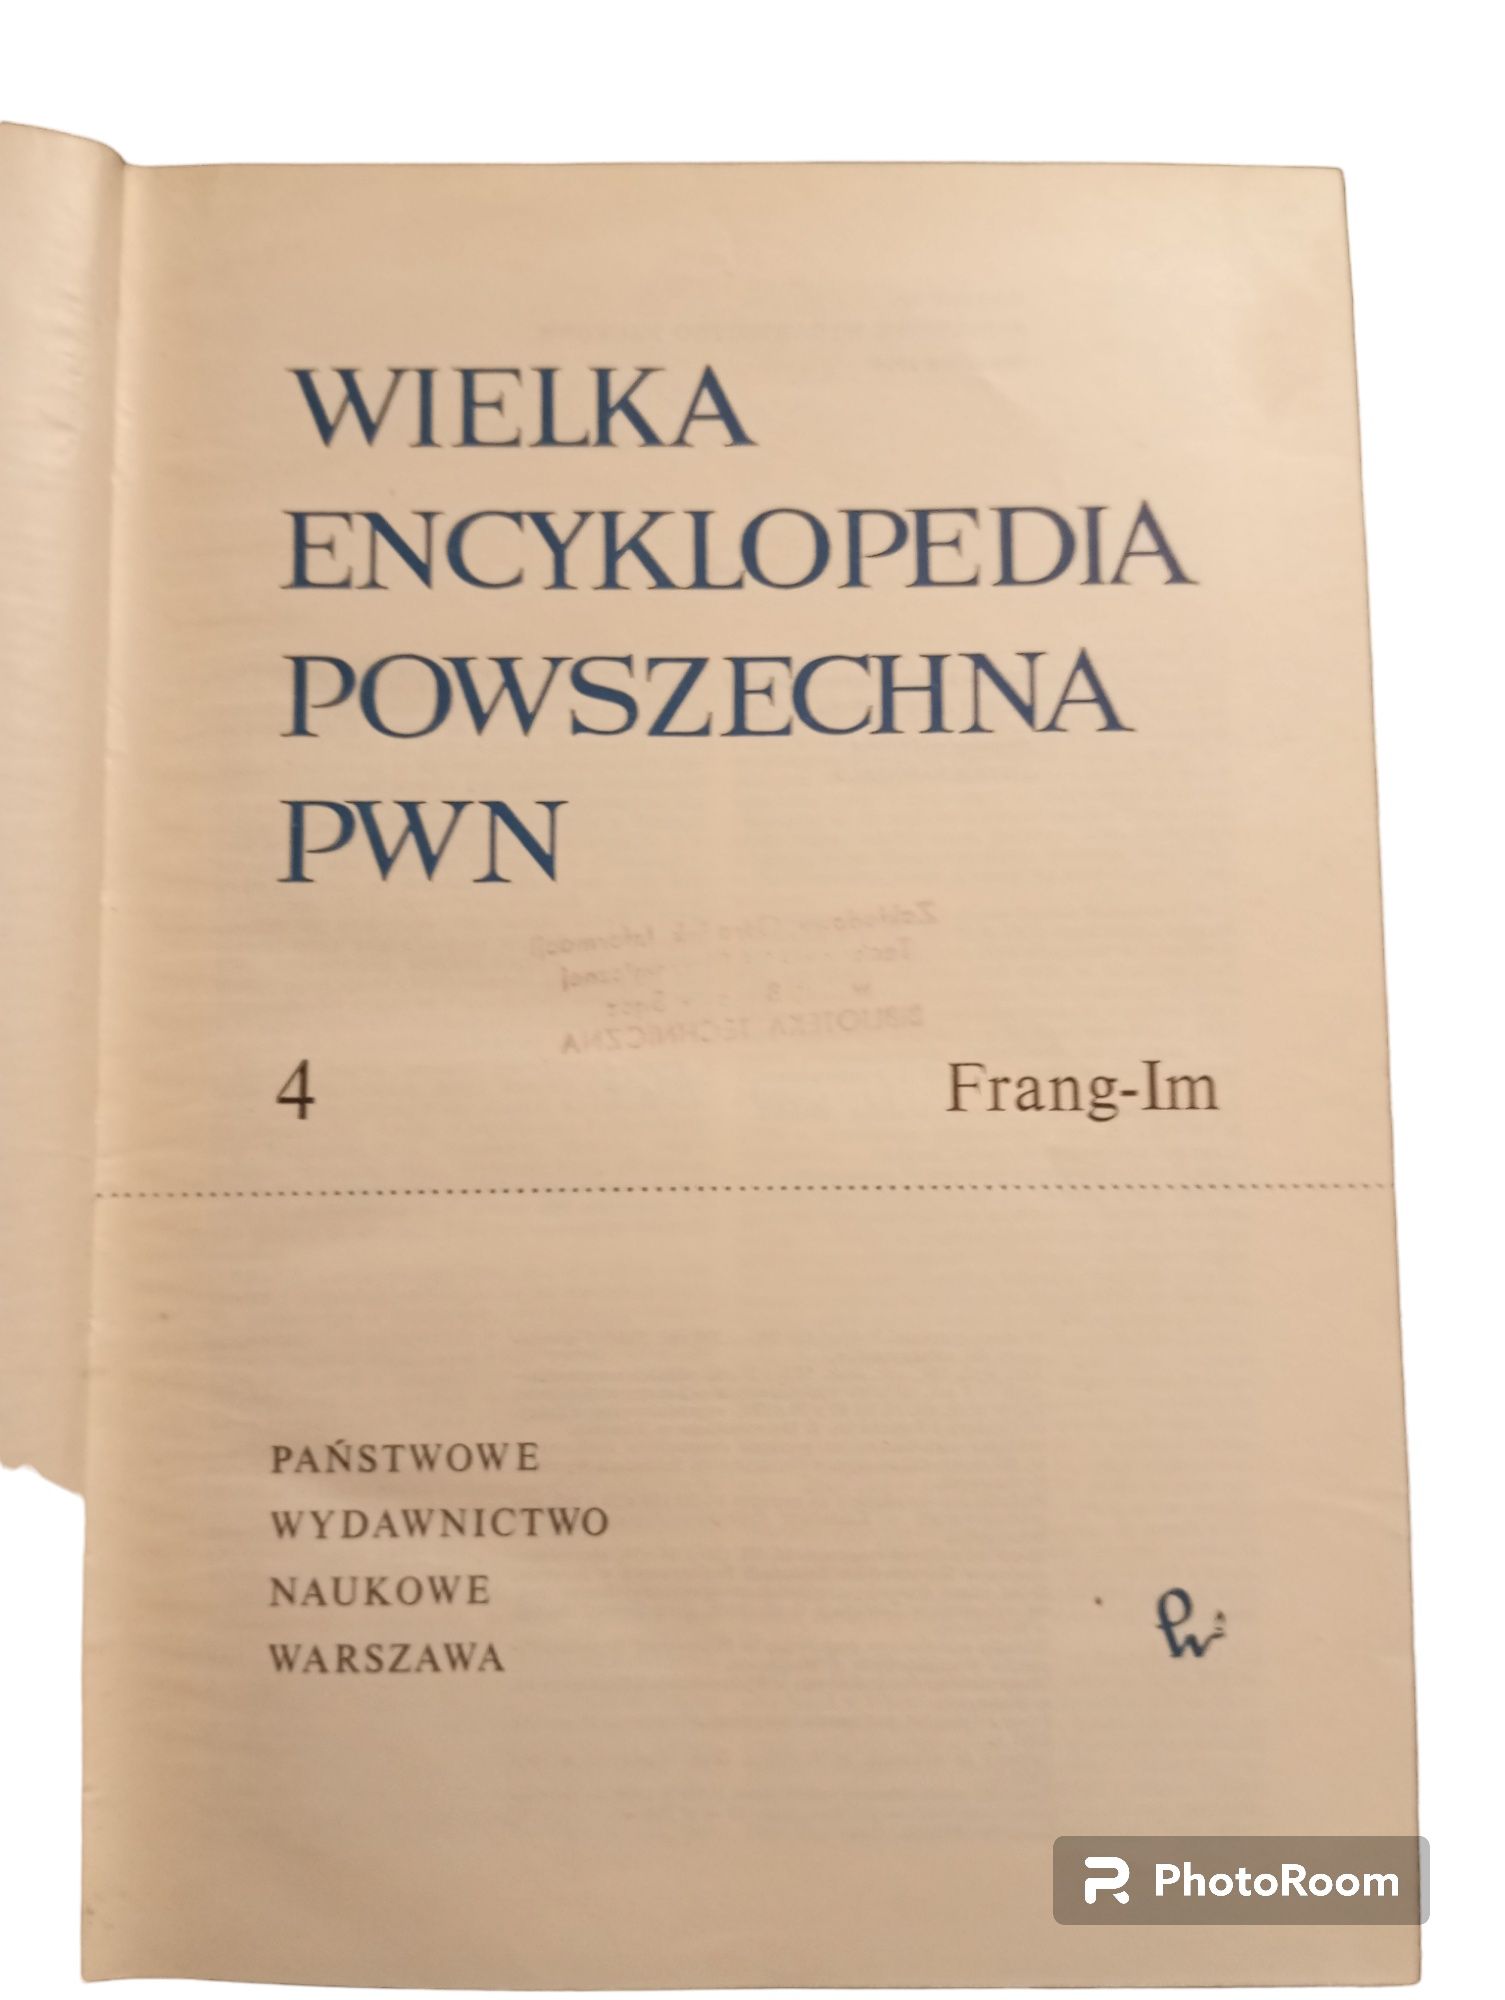 Wielka encyklopedia powszechna PWN